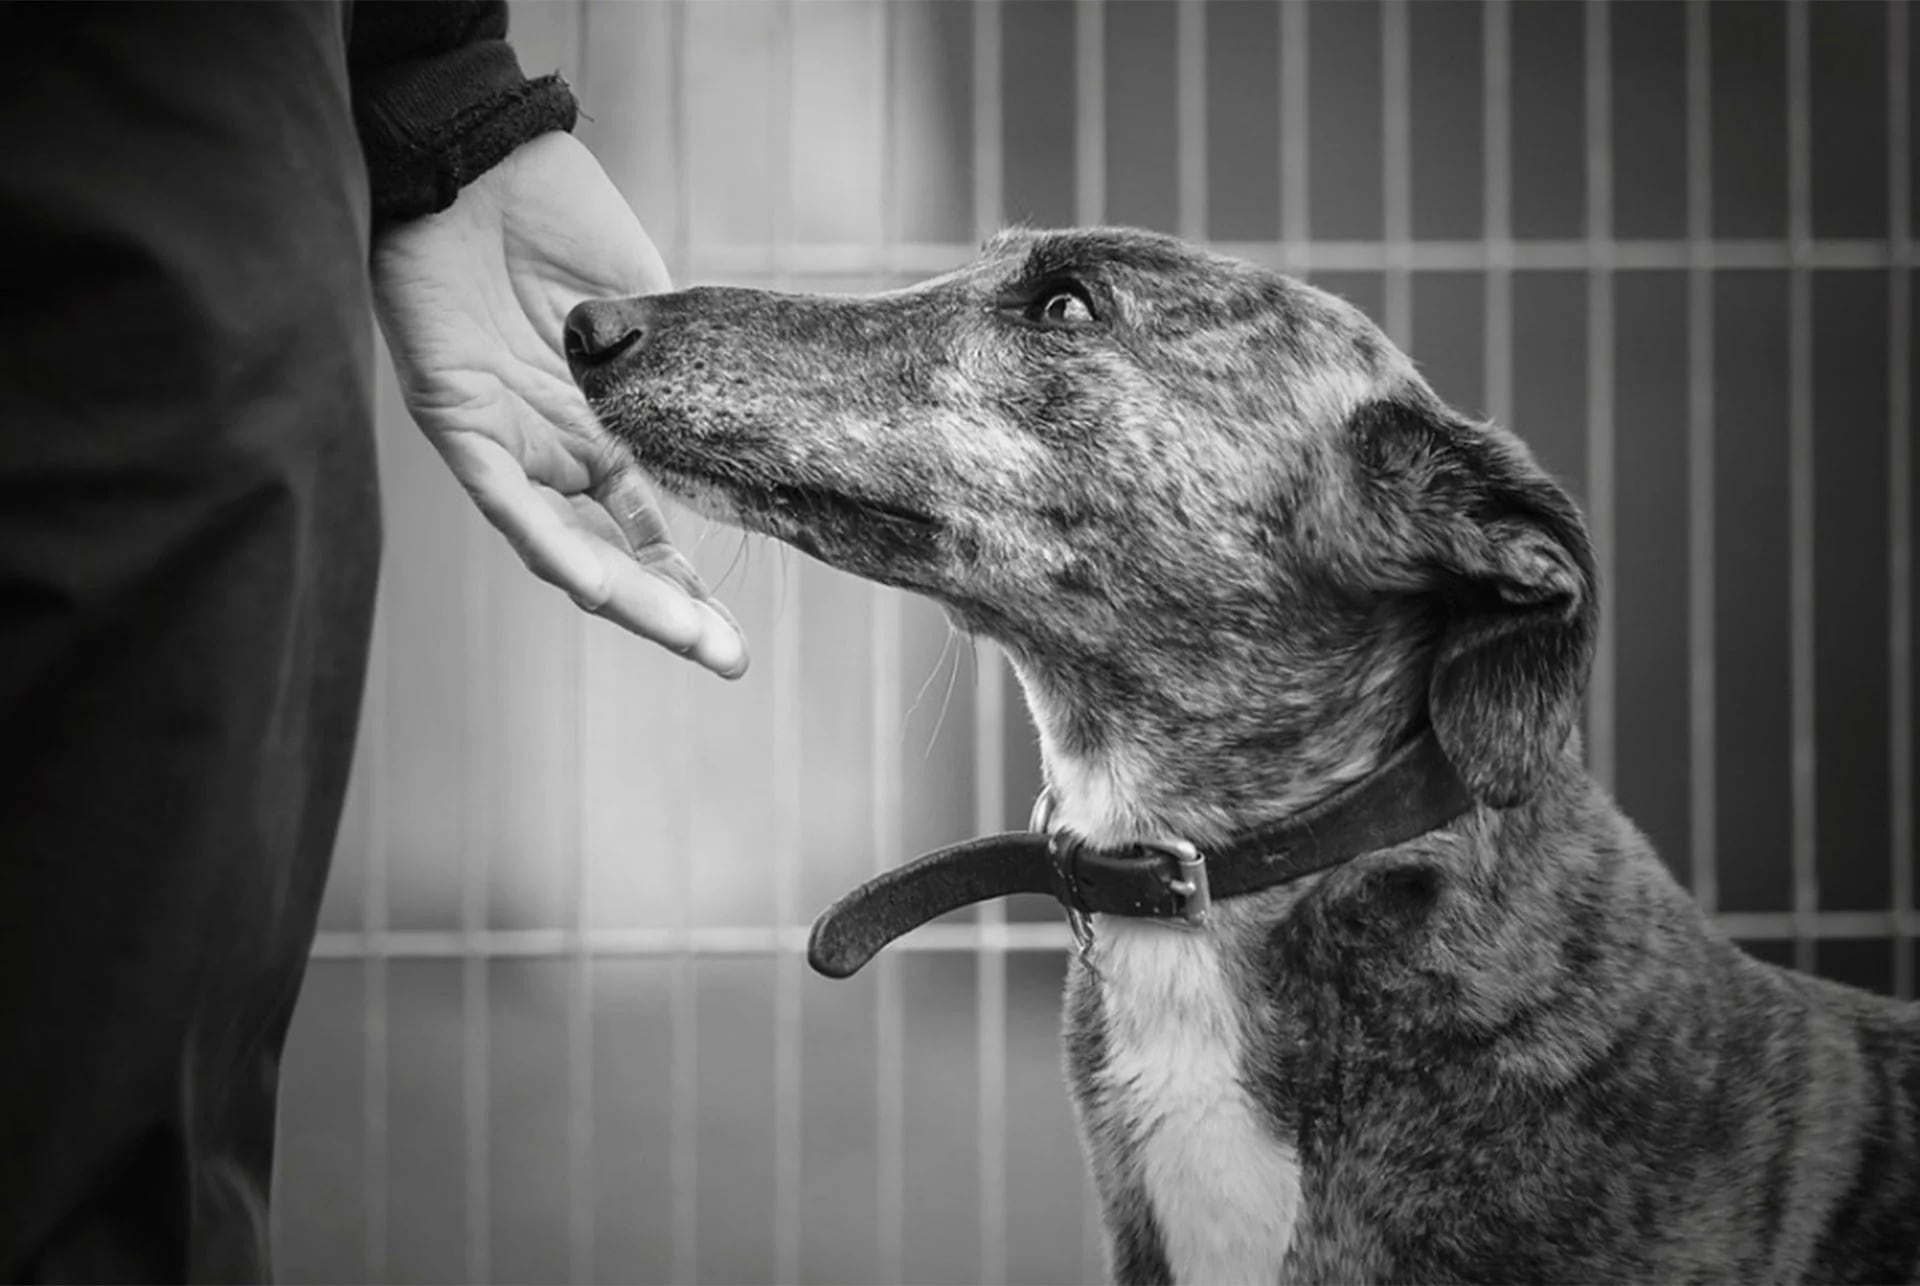 Categoría Perros rescatados. Chloe olfatea la mano de su cuidadora en un refugio animal (© Alexandra Robins)